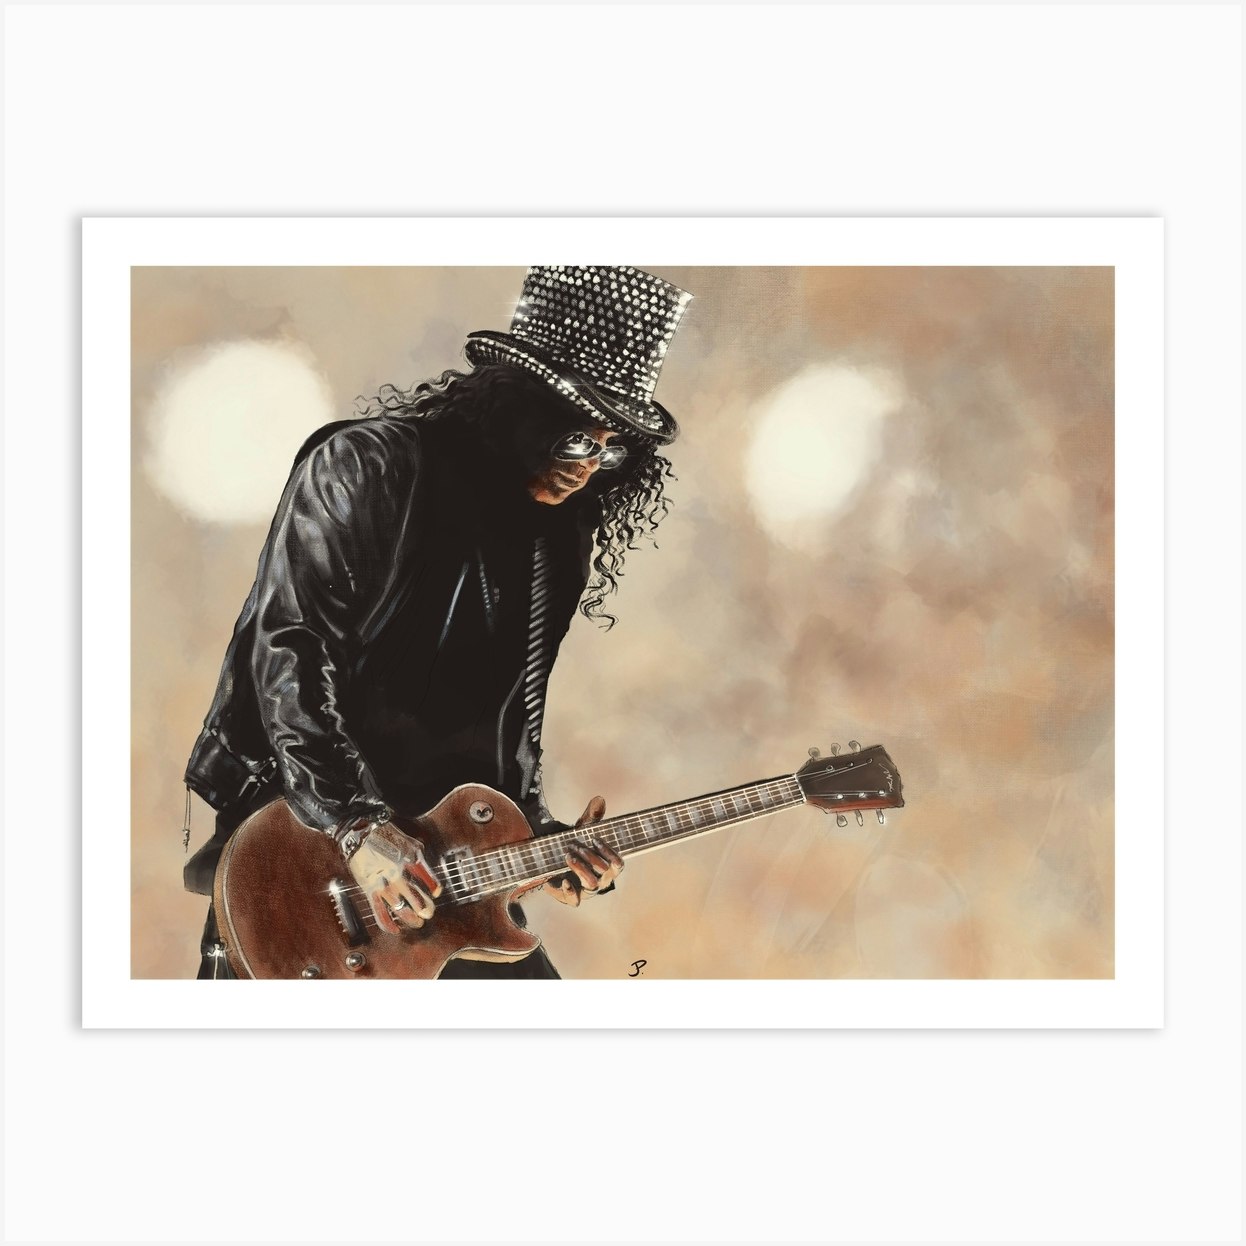 Slash - Guns N Roses Art Print